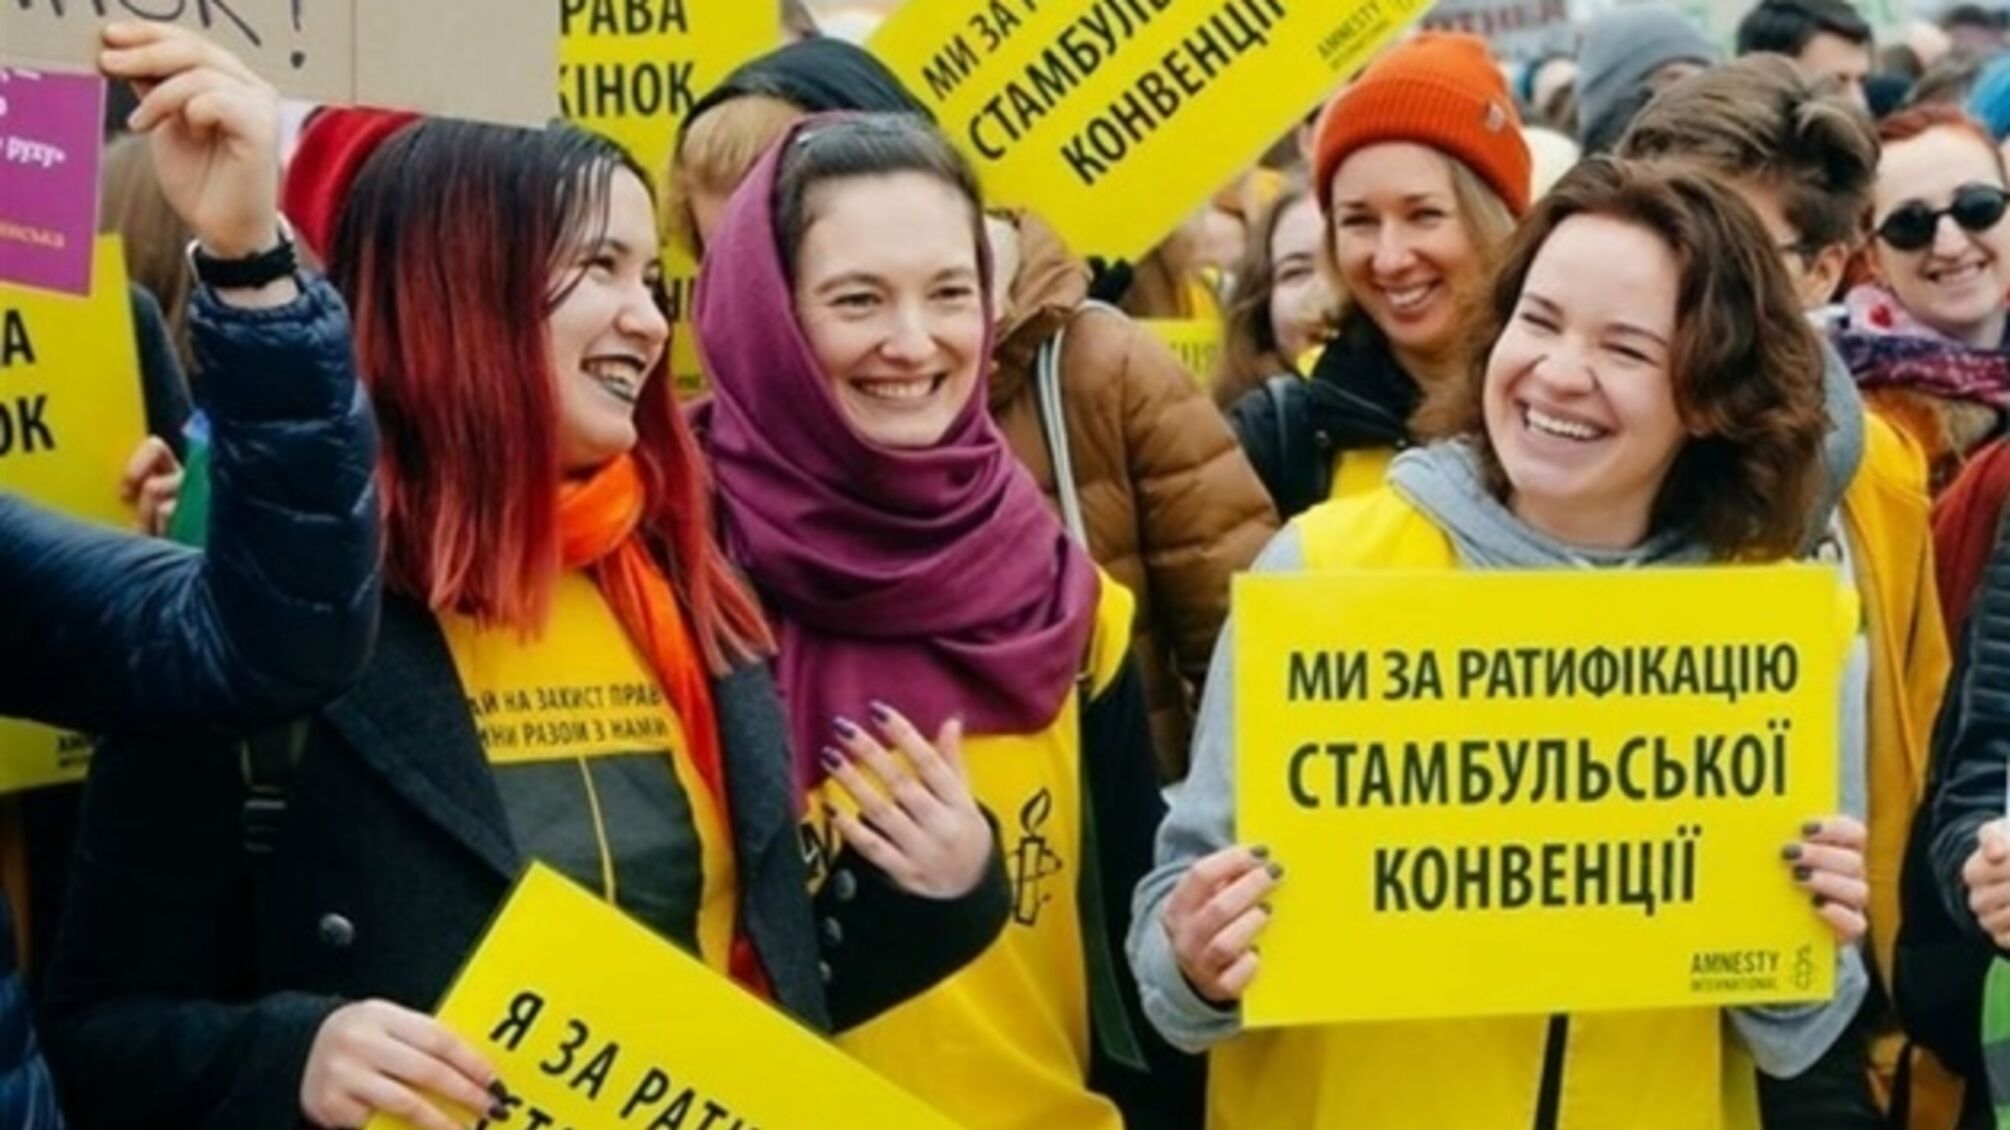 Нардепи підтримали ратифікацію Стамбульської конвенції: що зміниться в Україні